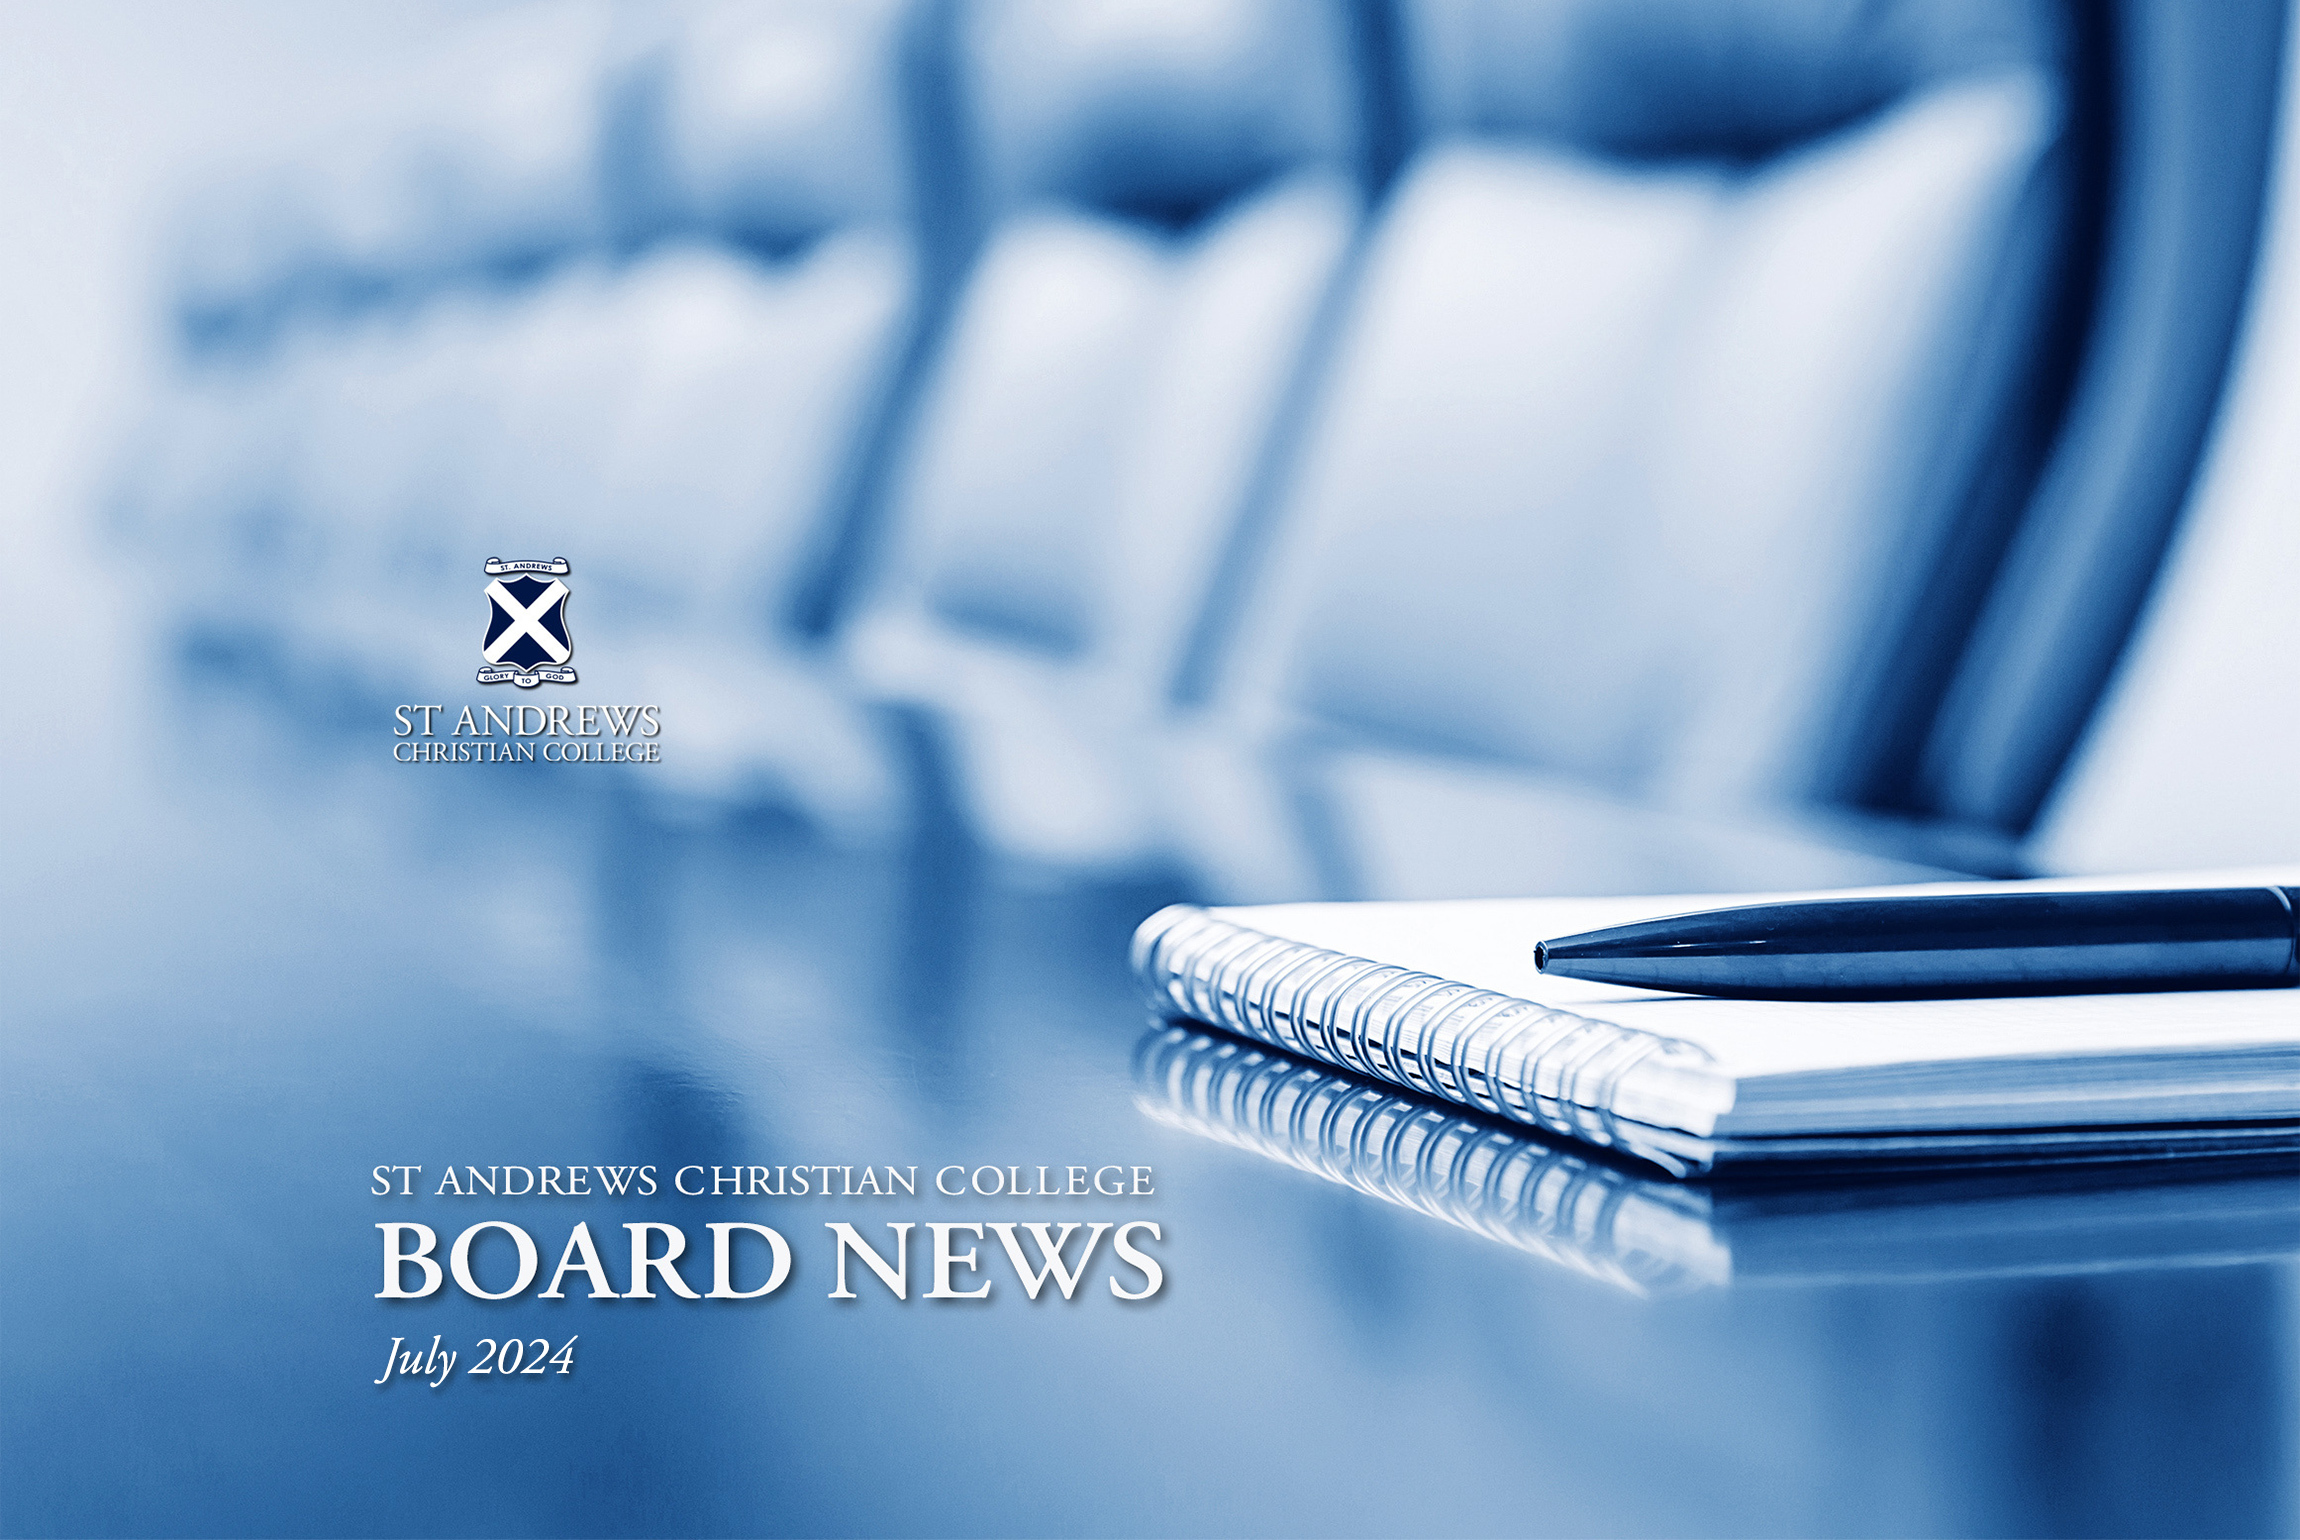 Board News - July 2024